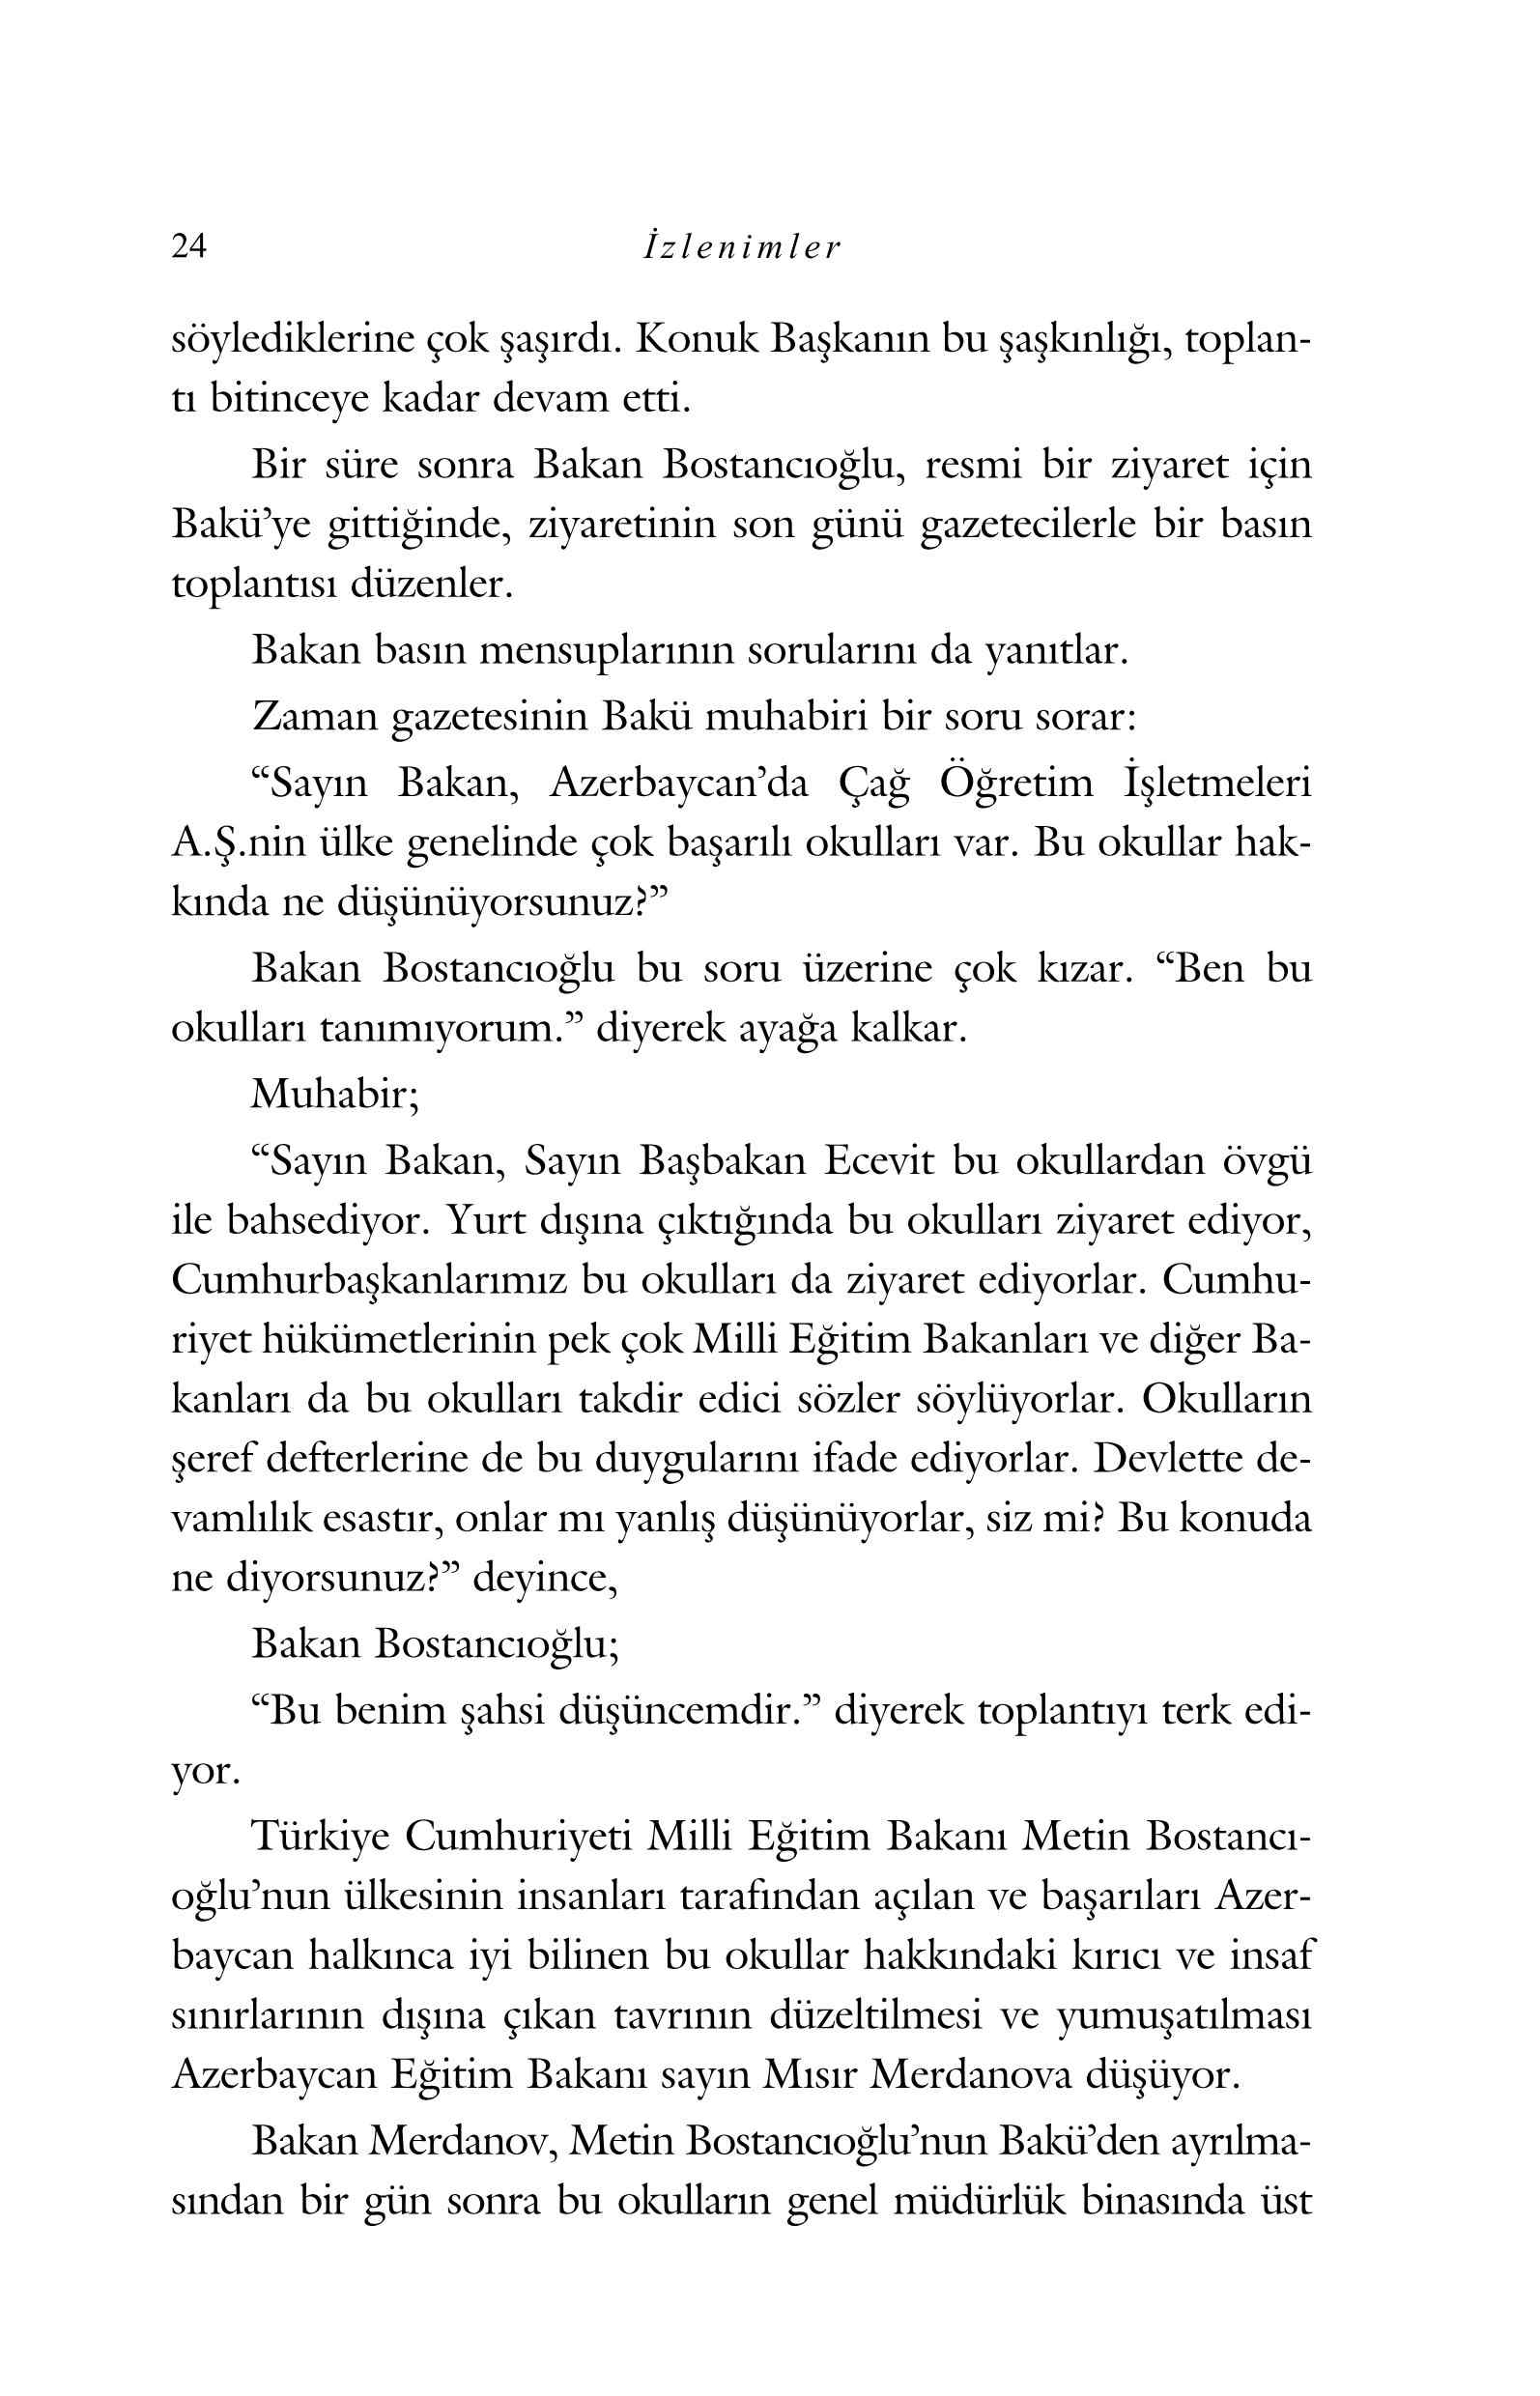 Yurt Disi Hatiralari- Aysal Aytac - Izlenimler - Yurt Disindaki Turk Okullari - Sulh Adaciklari Resimli - KaynakYayinlari.pdf, 177-Sayfa 